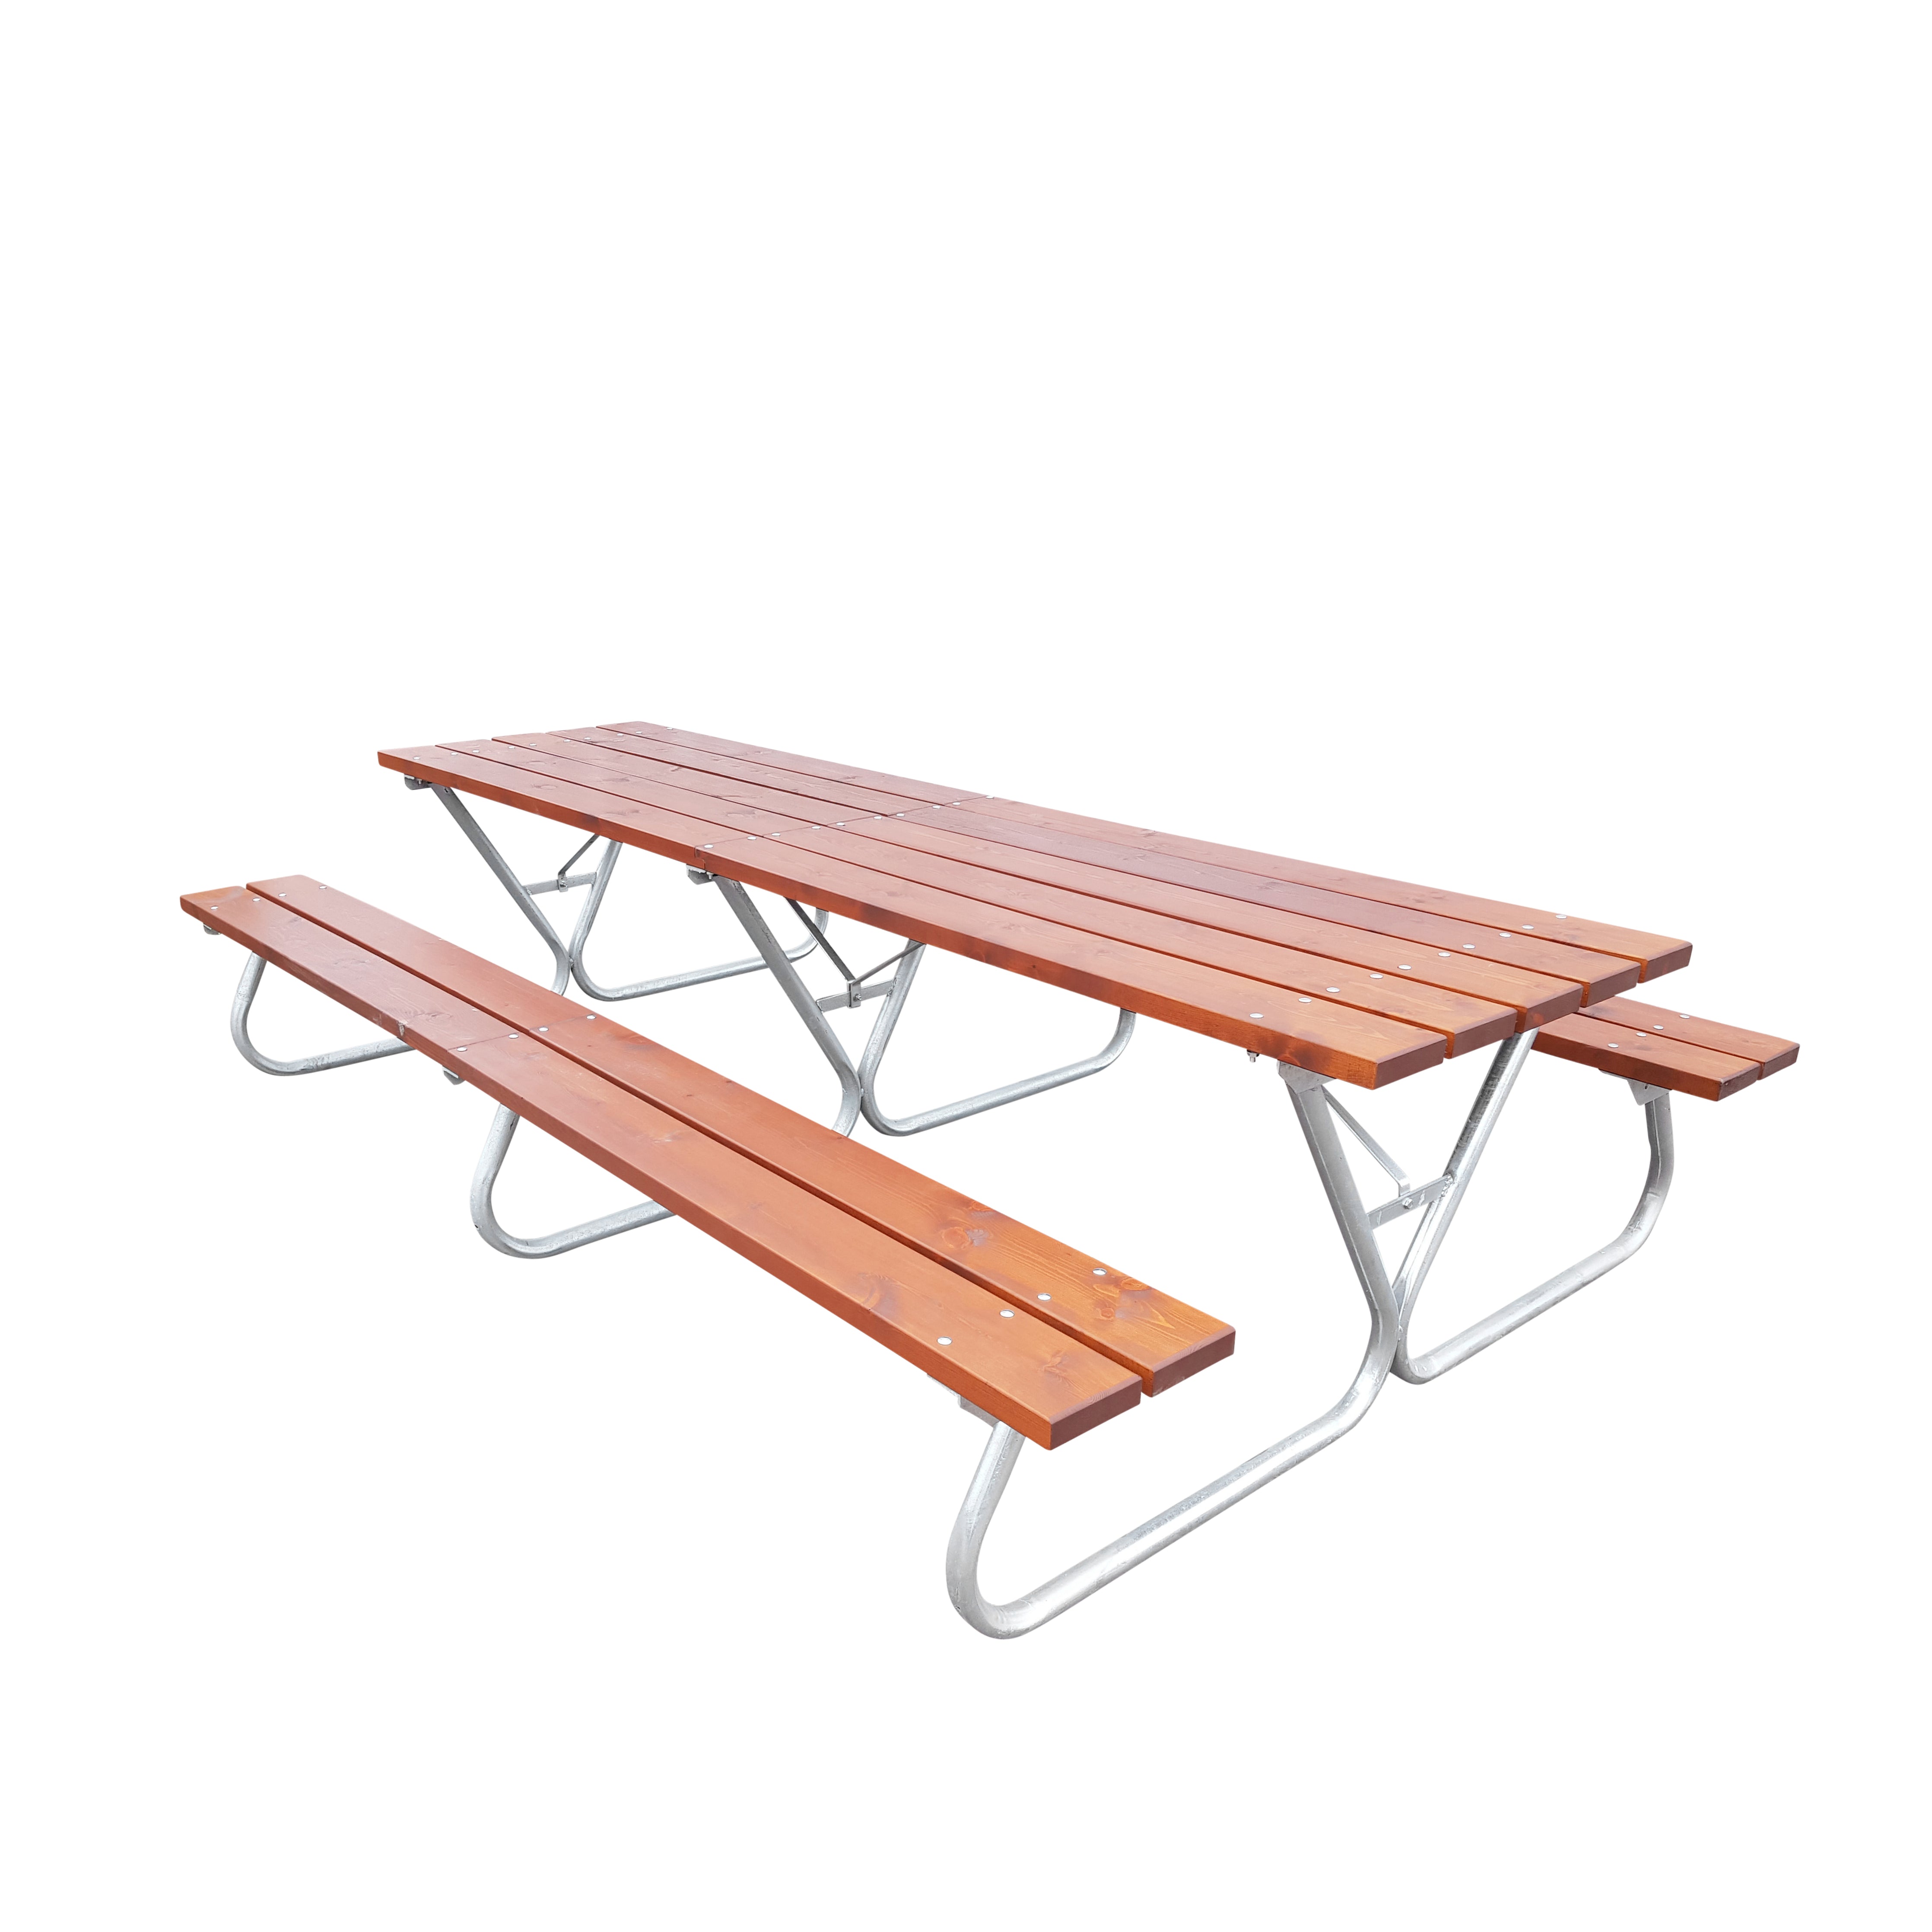 Holztisch, 29x39 inc, Heller Tisch, Picknicktisch, Boho-Tisch